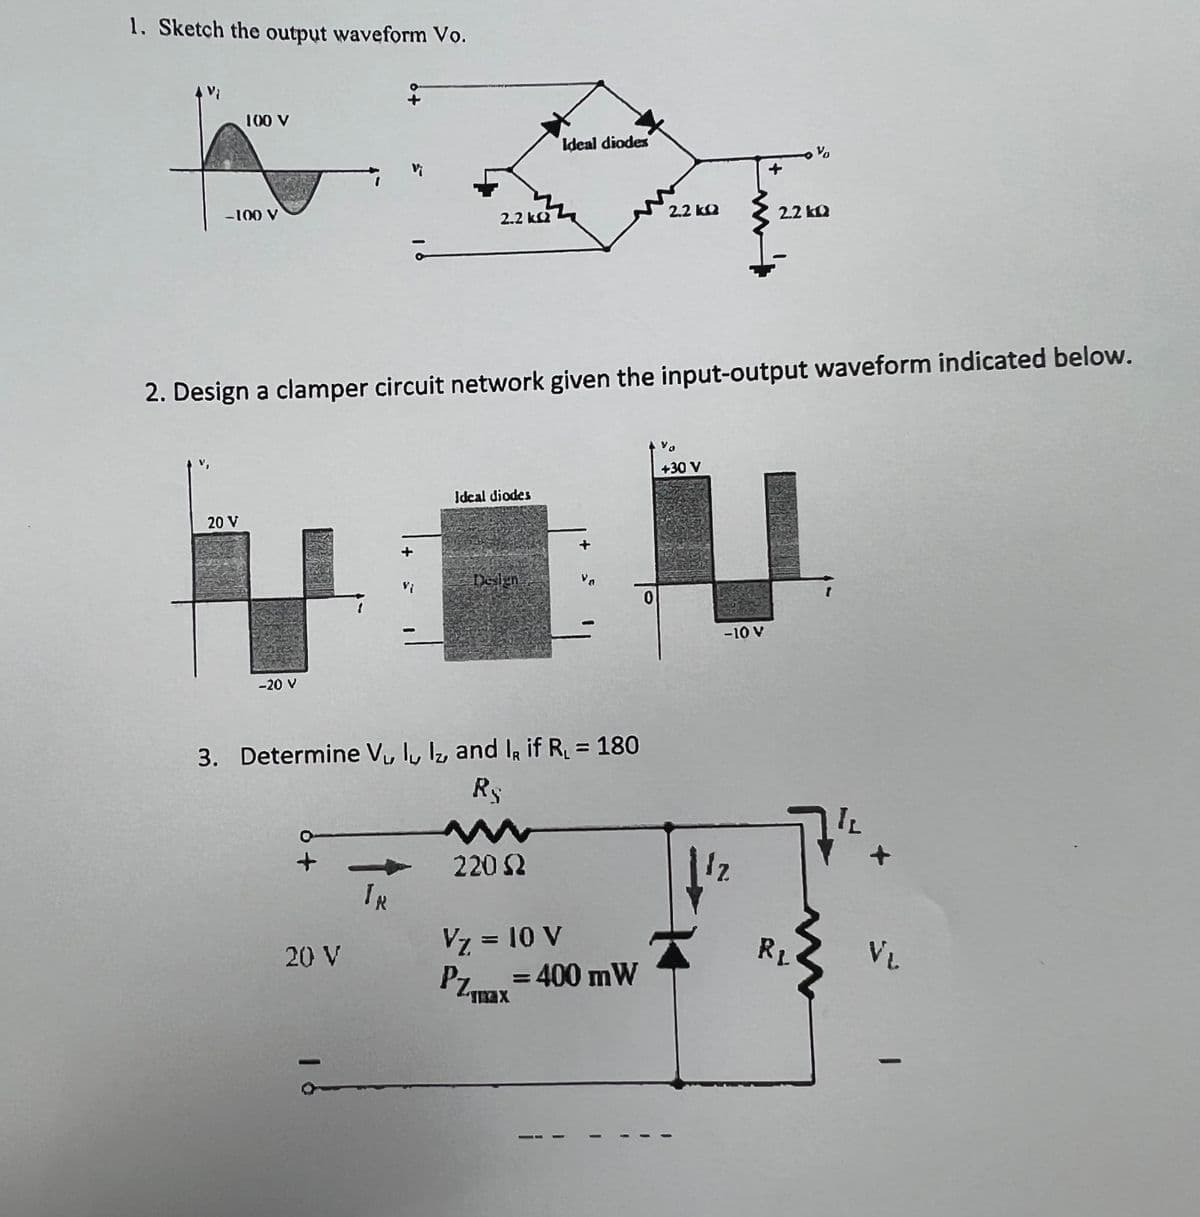 1. Sketch the output waveform Vo.
100 V
-100 V
20 V
-20 V
2.2 kQ2
20 V
TR
2. Design a clamper circuit network given the input-output waveform indicated below.
Ideal diodes
Design
3. Determine V₁ ly lz, and I, if R₁ = 180
R
Ideal diodes
220 (2
Vz = 10 V
PZmax=400 mW
2.2kQ
0
+30 V
{
-10 V
12
V
2.2kQ
RL
12
VL
1